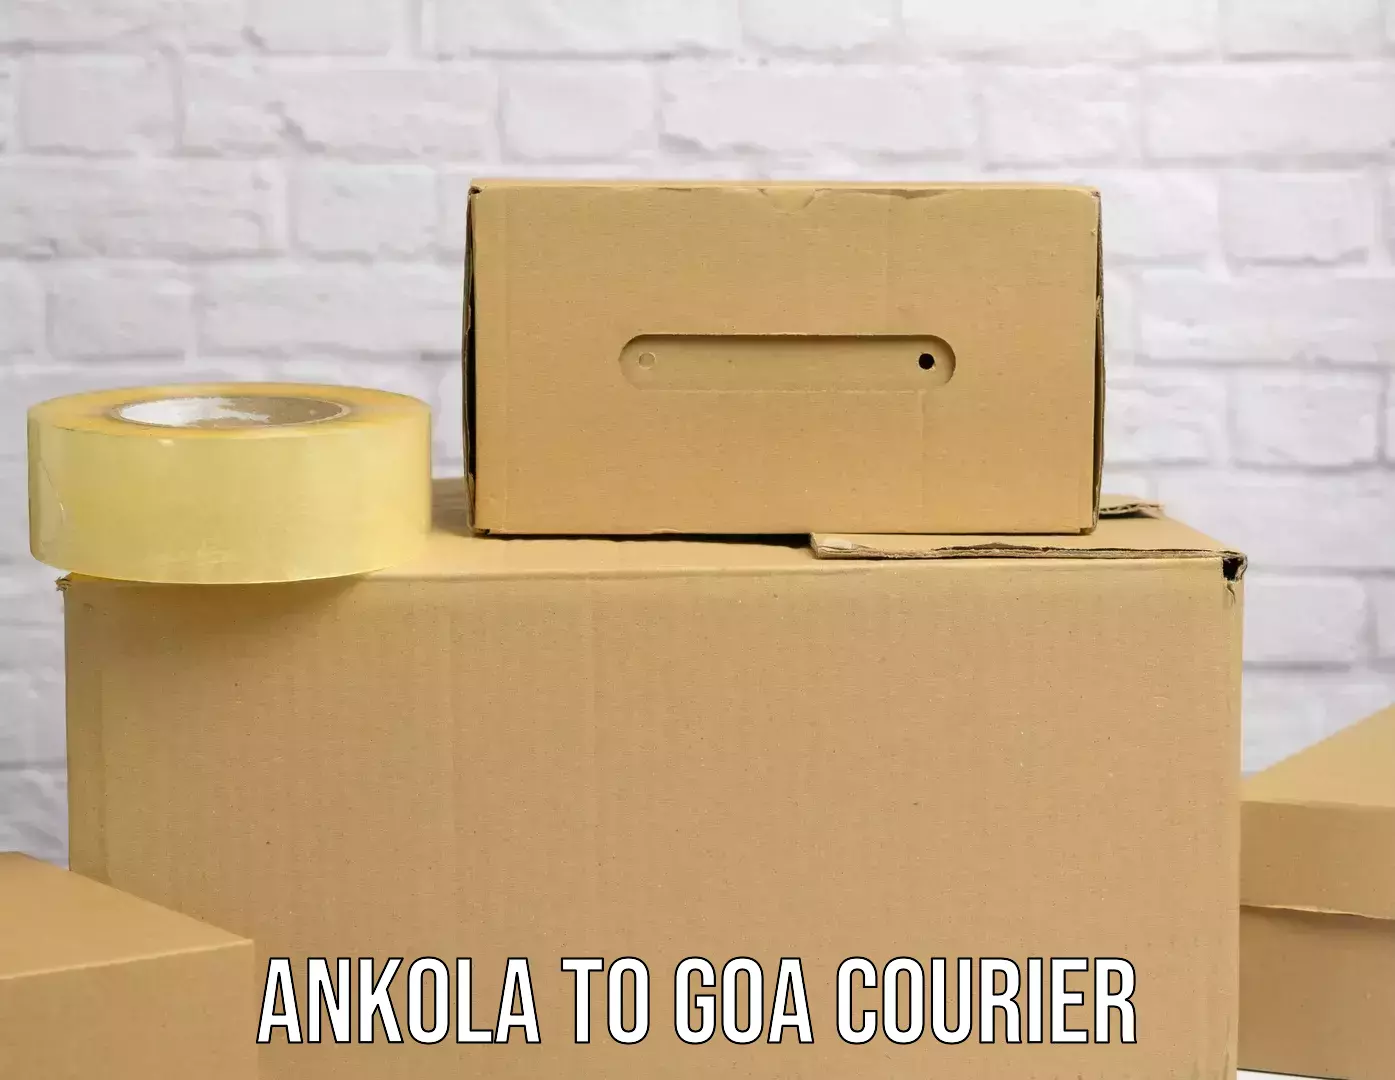 High-capacity shipping options Ankola to Ponda